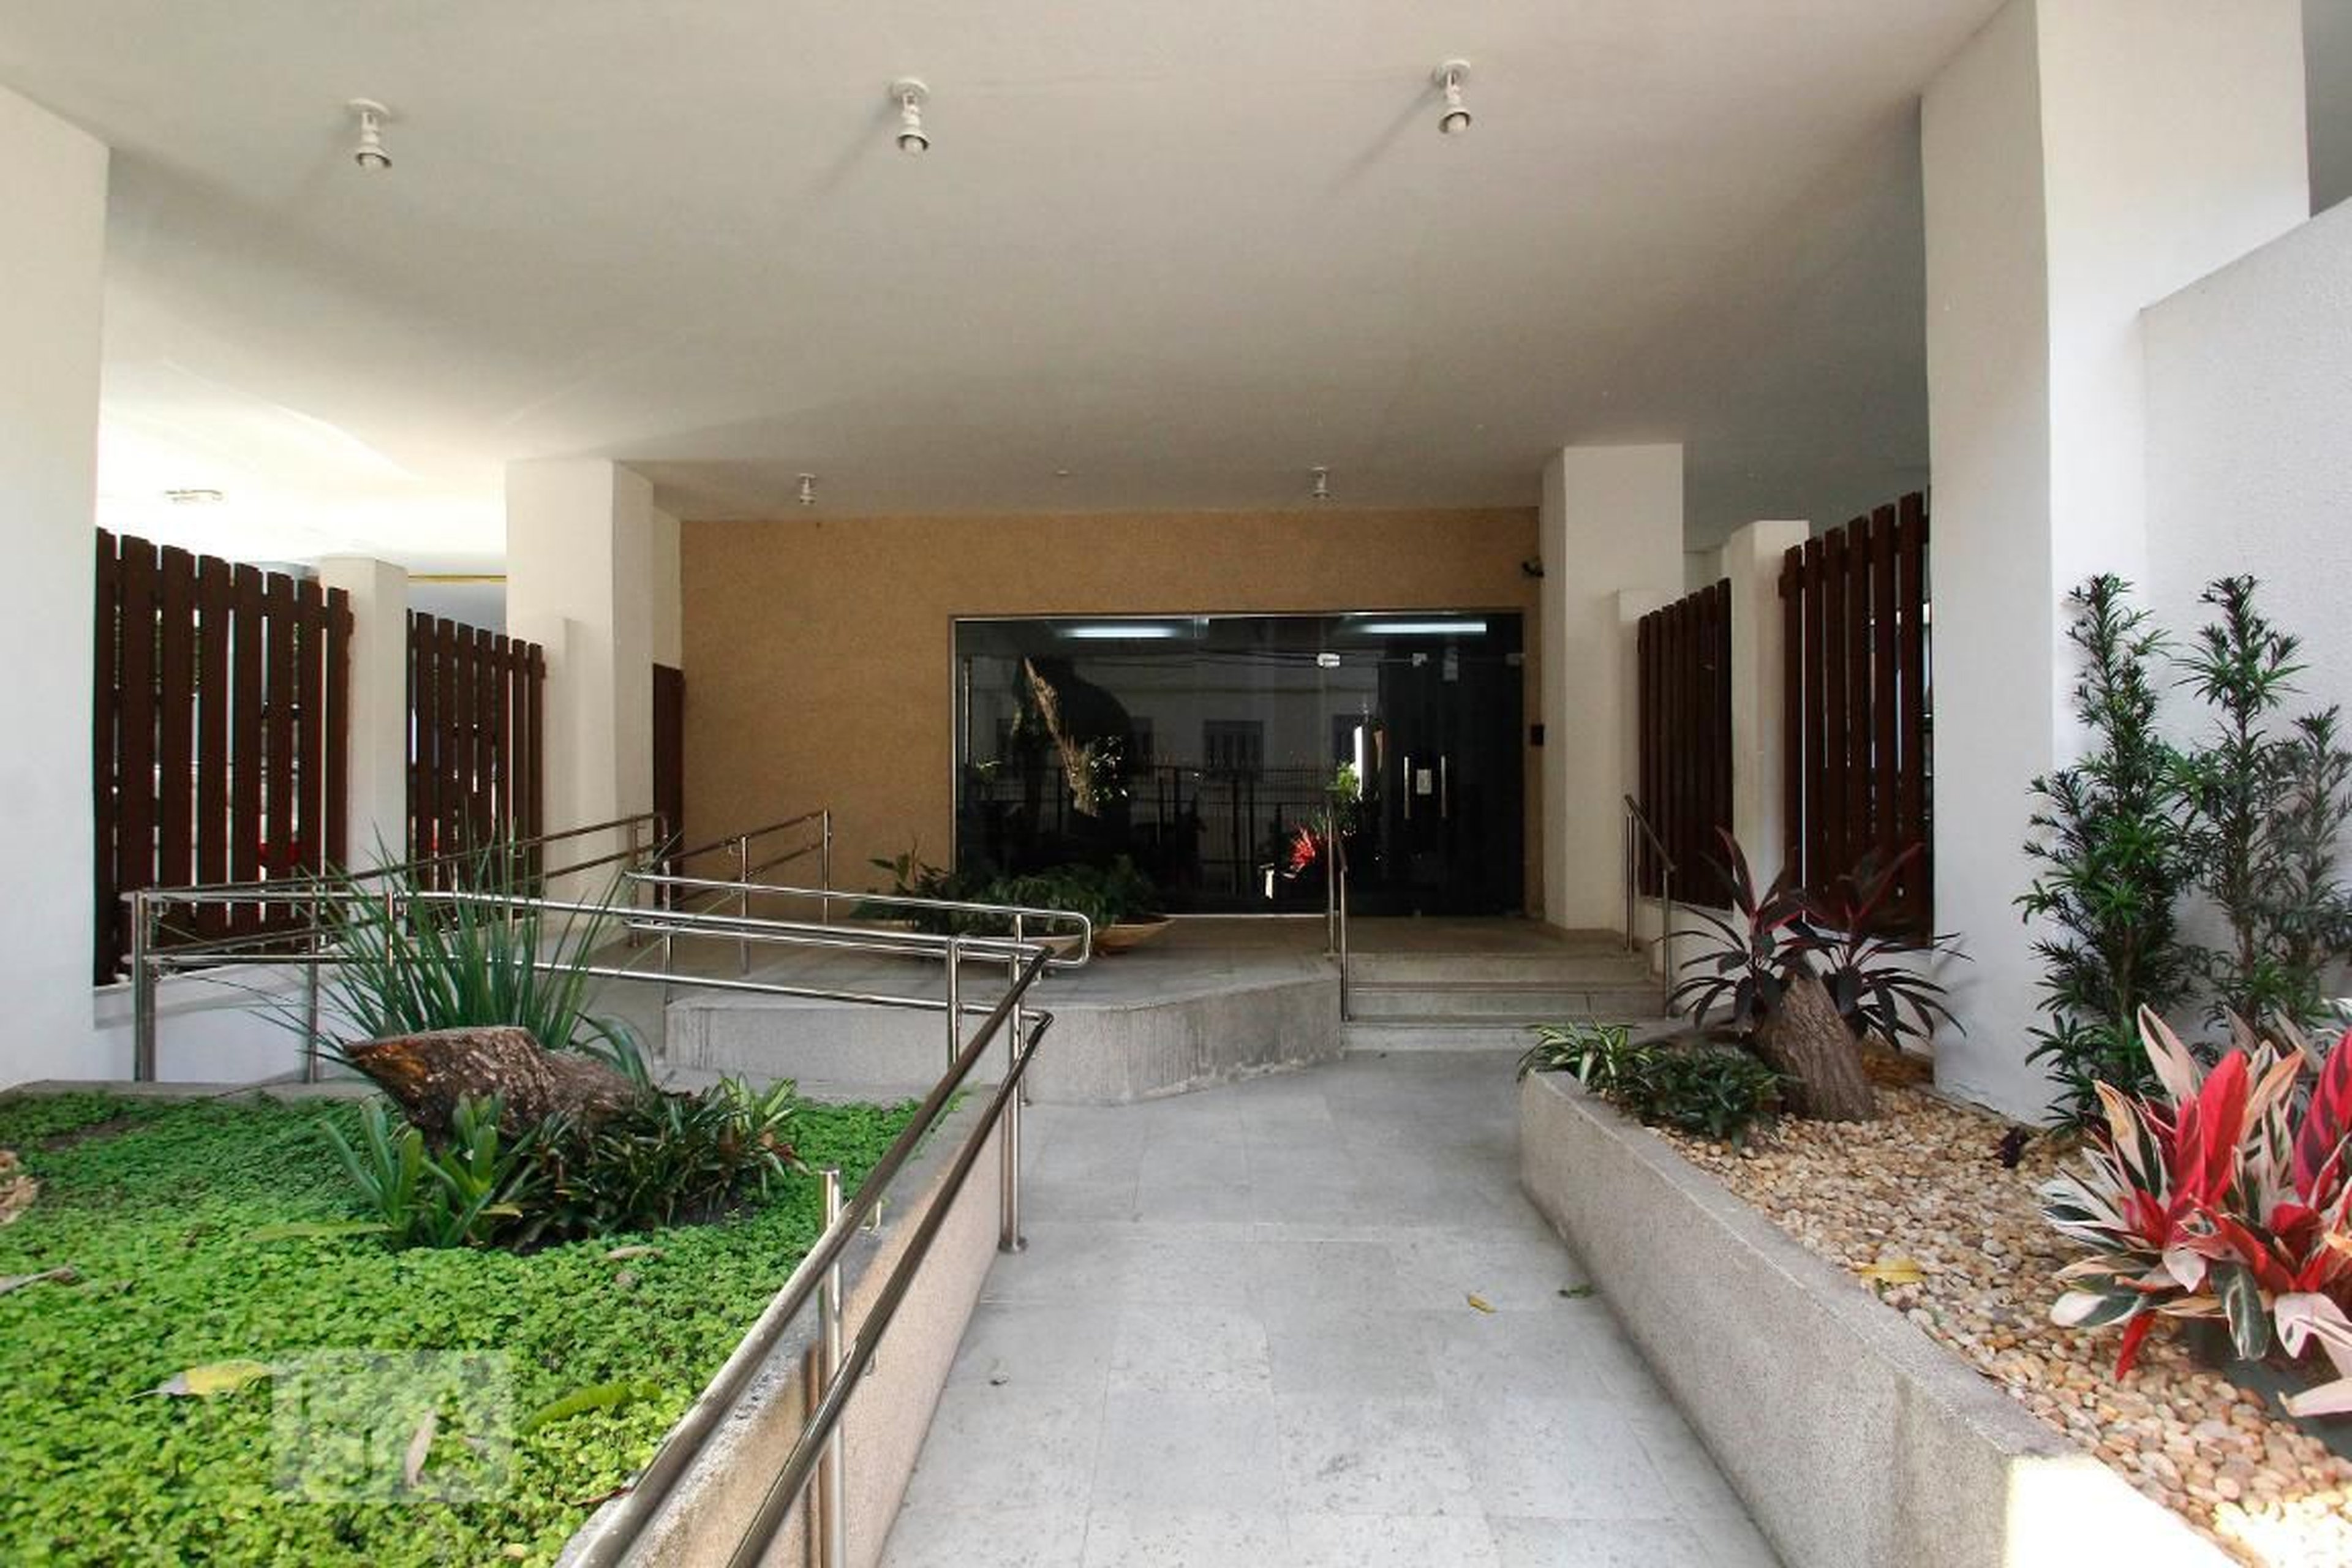 Entrada - Edifício Pereira da Silva